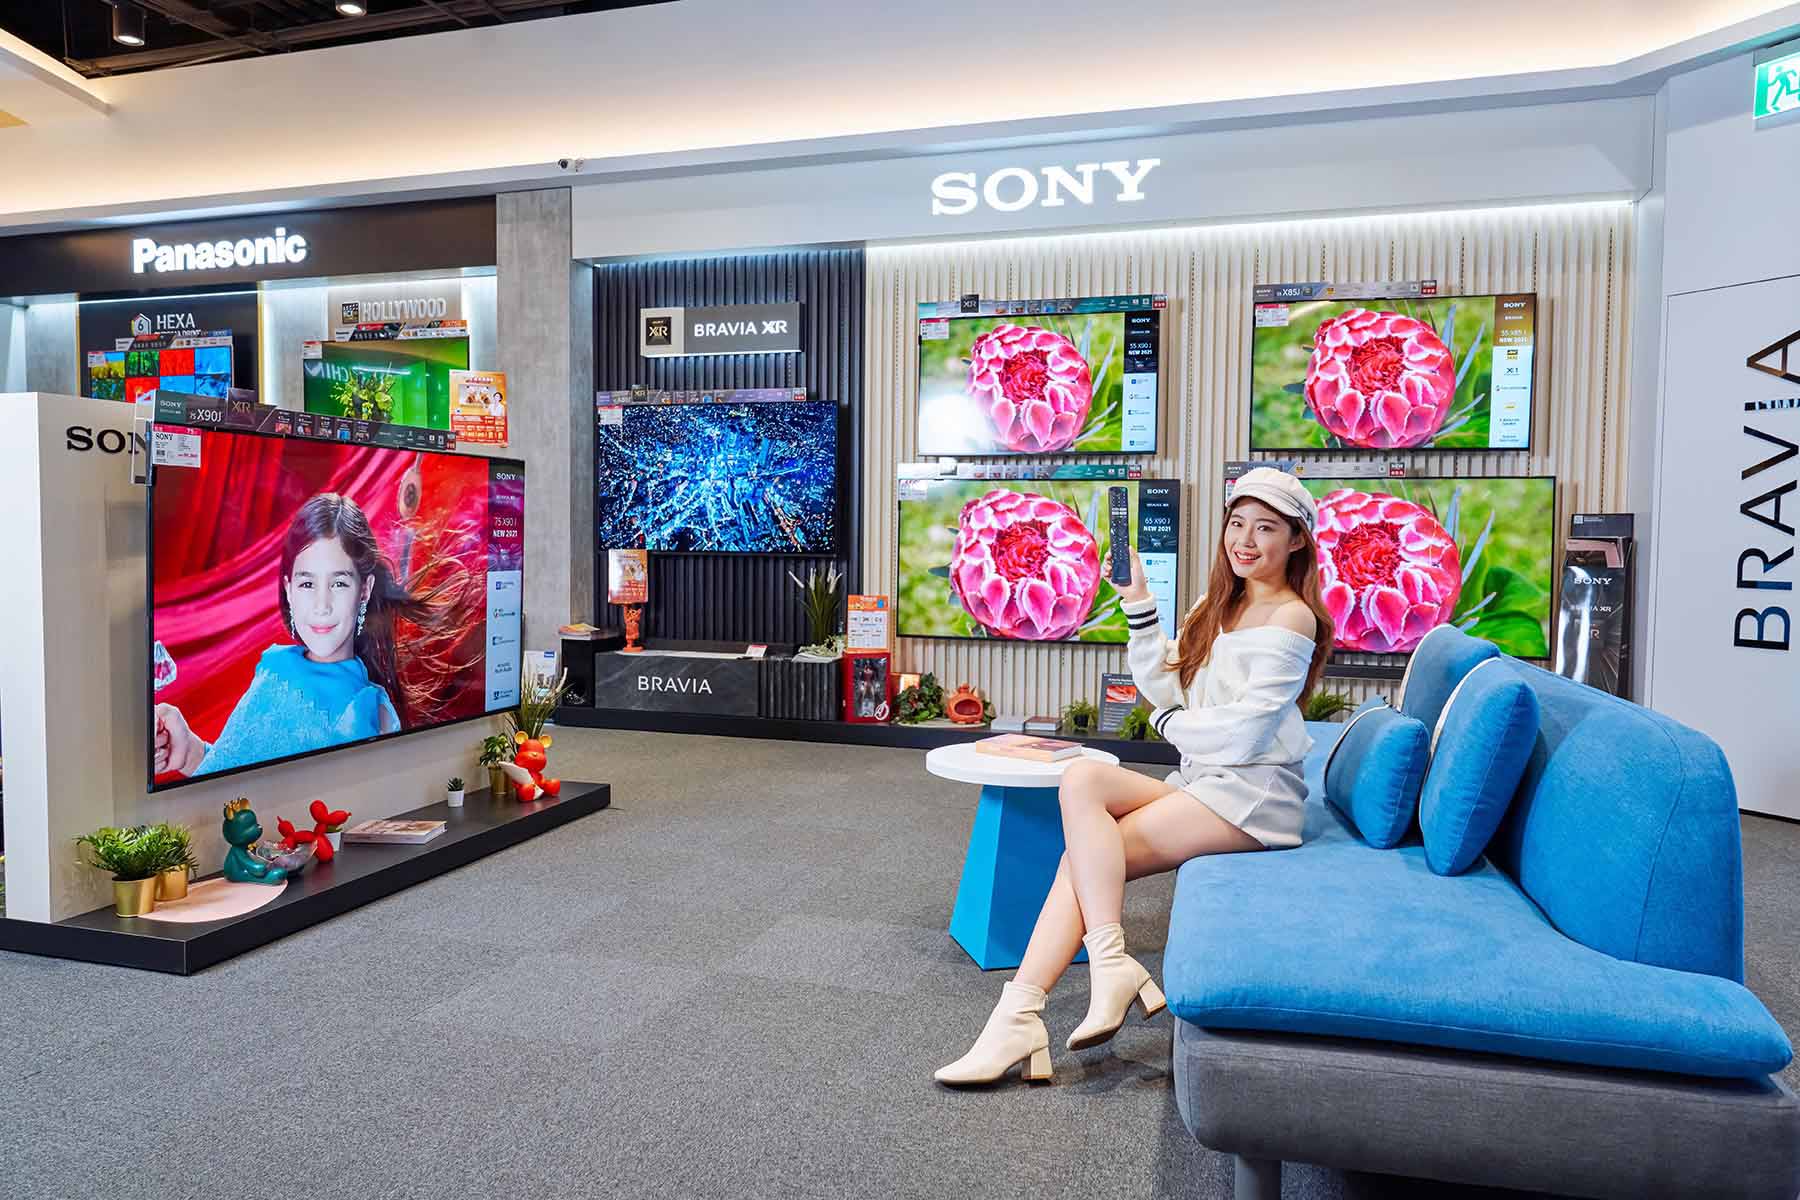 各品牌、各種尺寸的智慧聯網液晶電視在全國電一應俱全，也有舒適的體驗區讓你親身感受新科技。